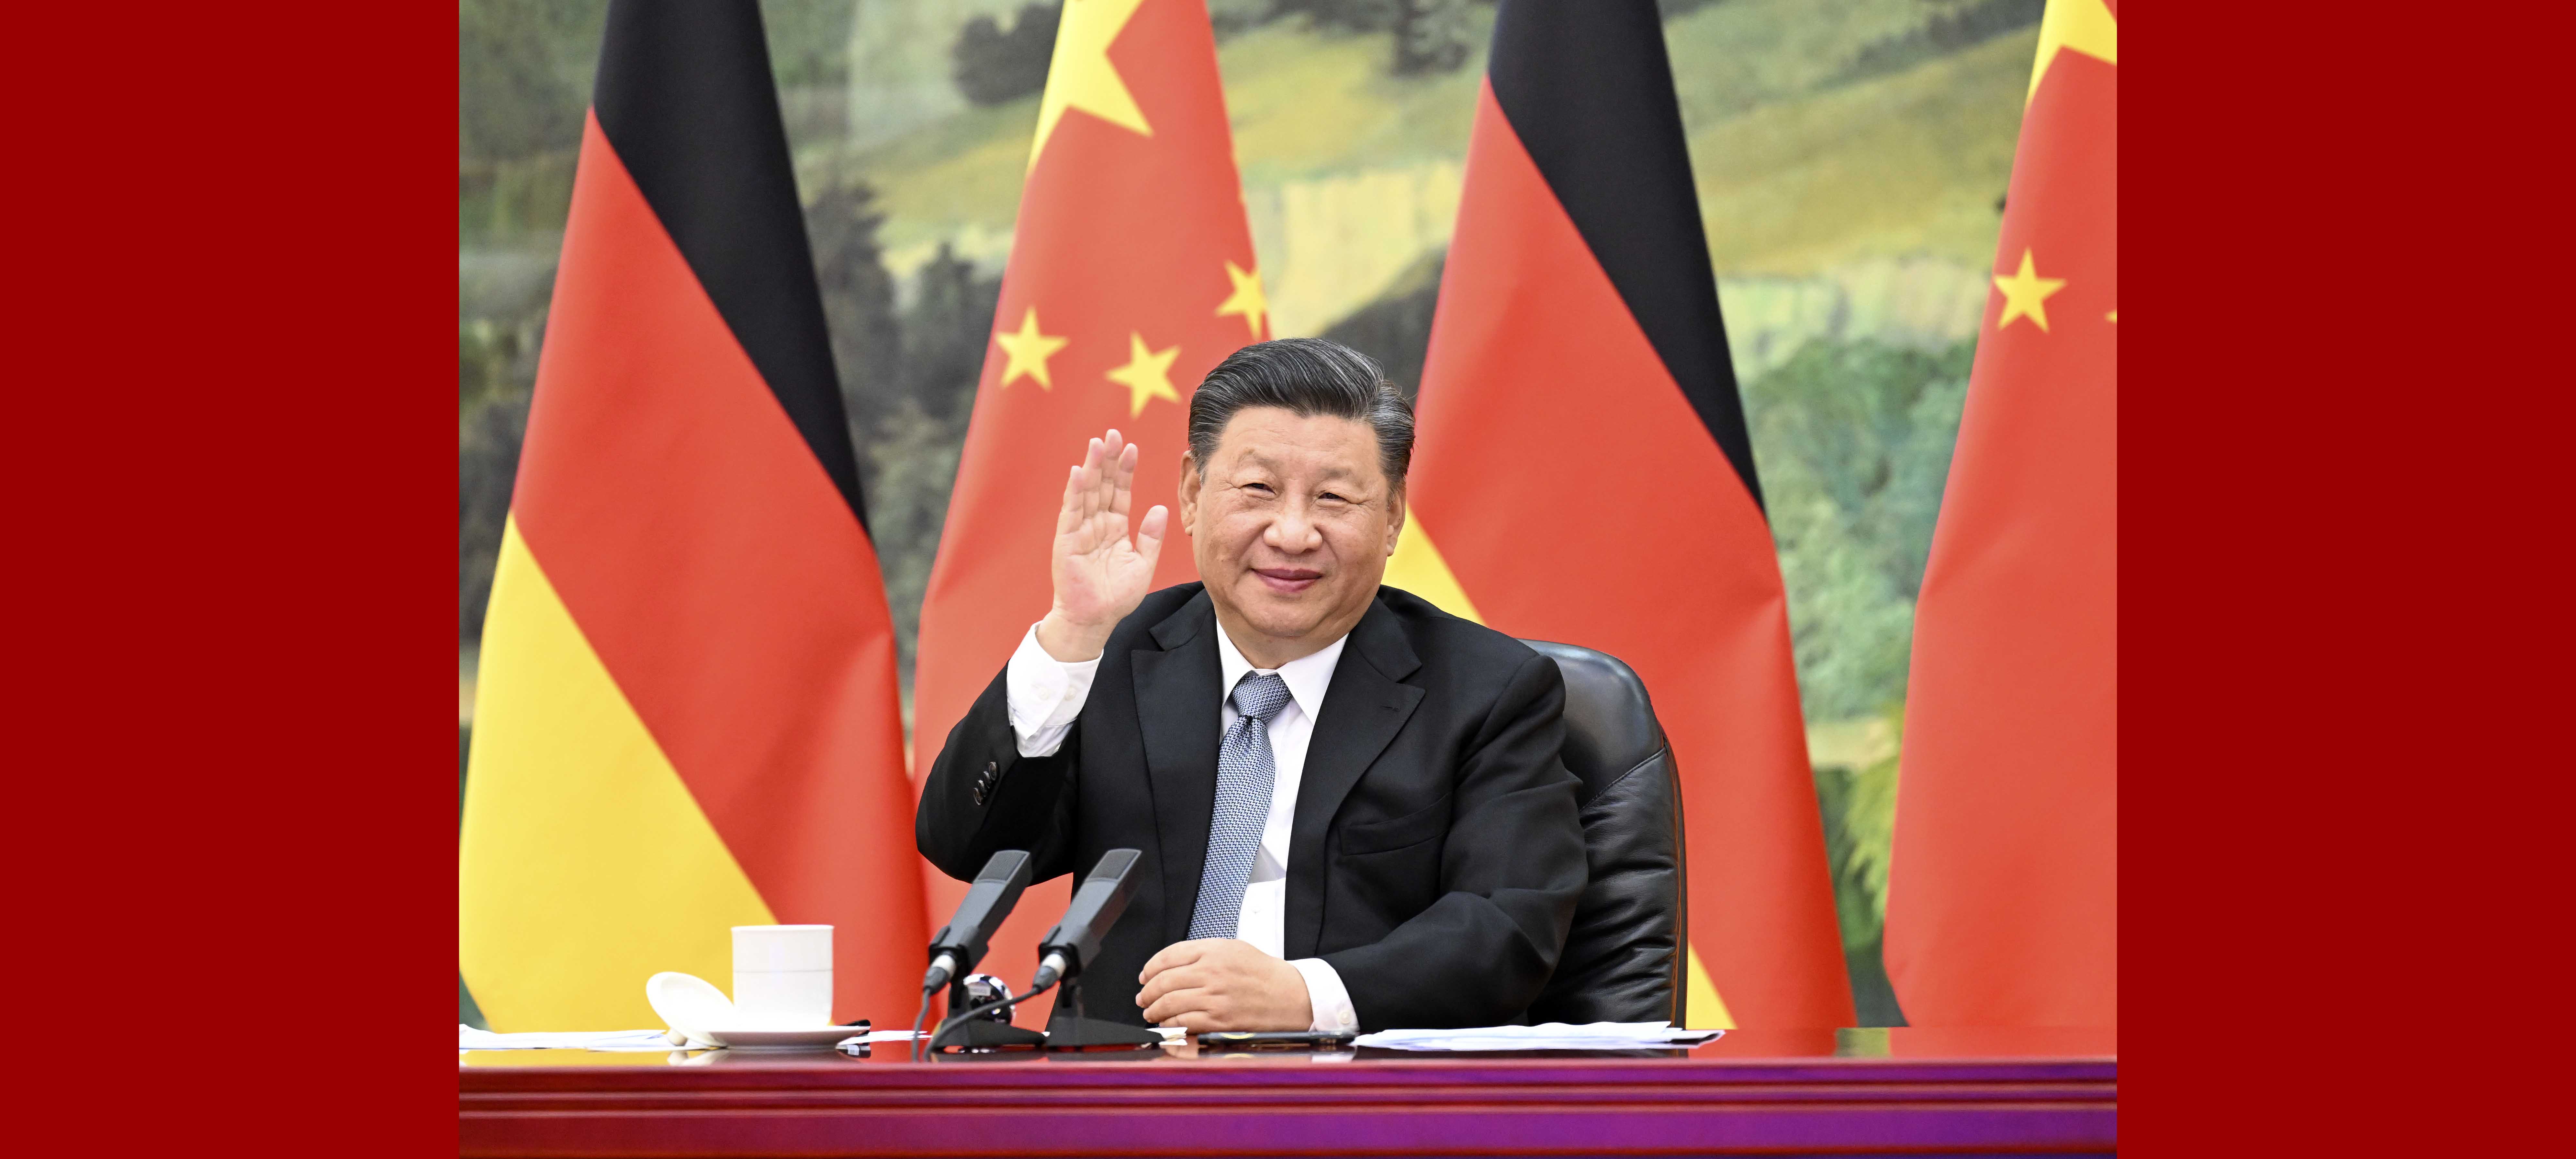 Em videoconferência com Merkel, Xi pede maiores laços com UE e Alemanha